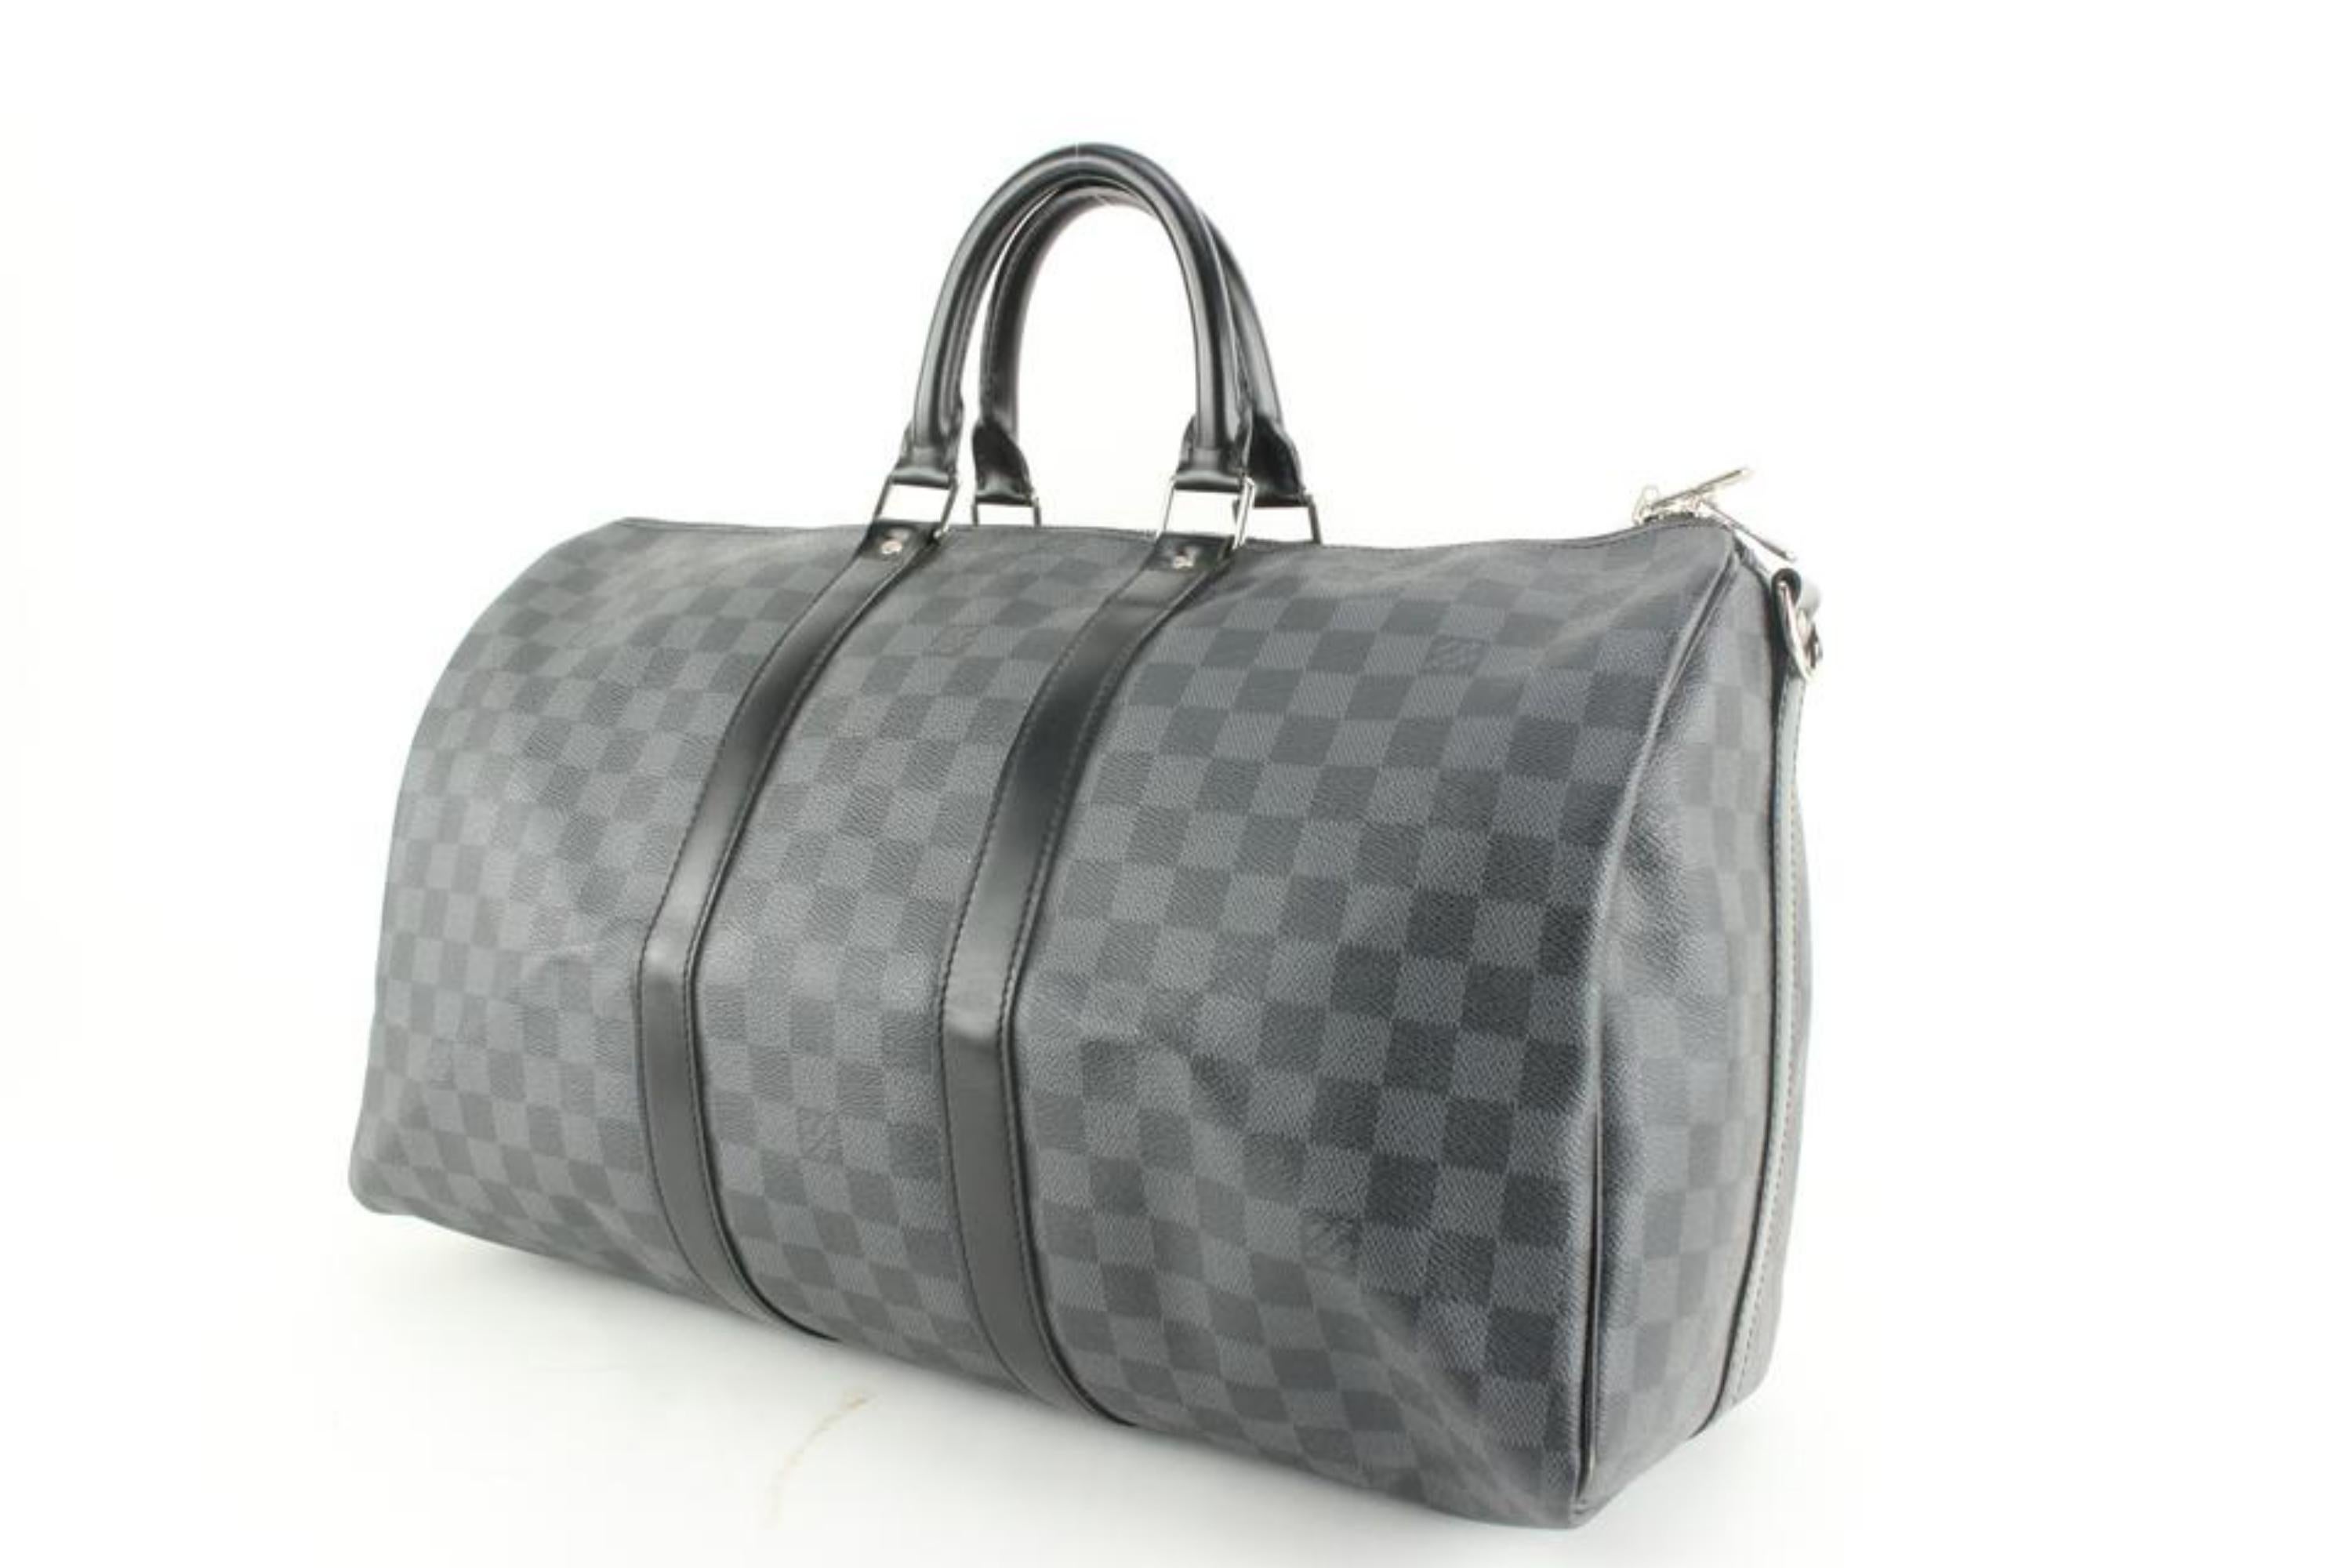 Louis Vuitton Black Damier Graphite Keepall Bandouliere 45 Duffle Bag 4l830a For Sale 5